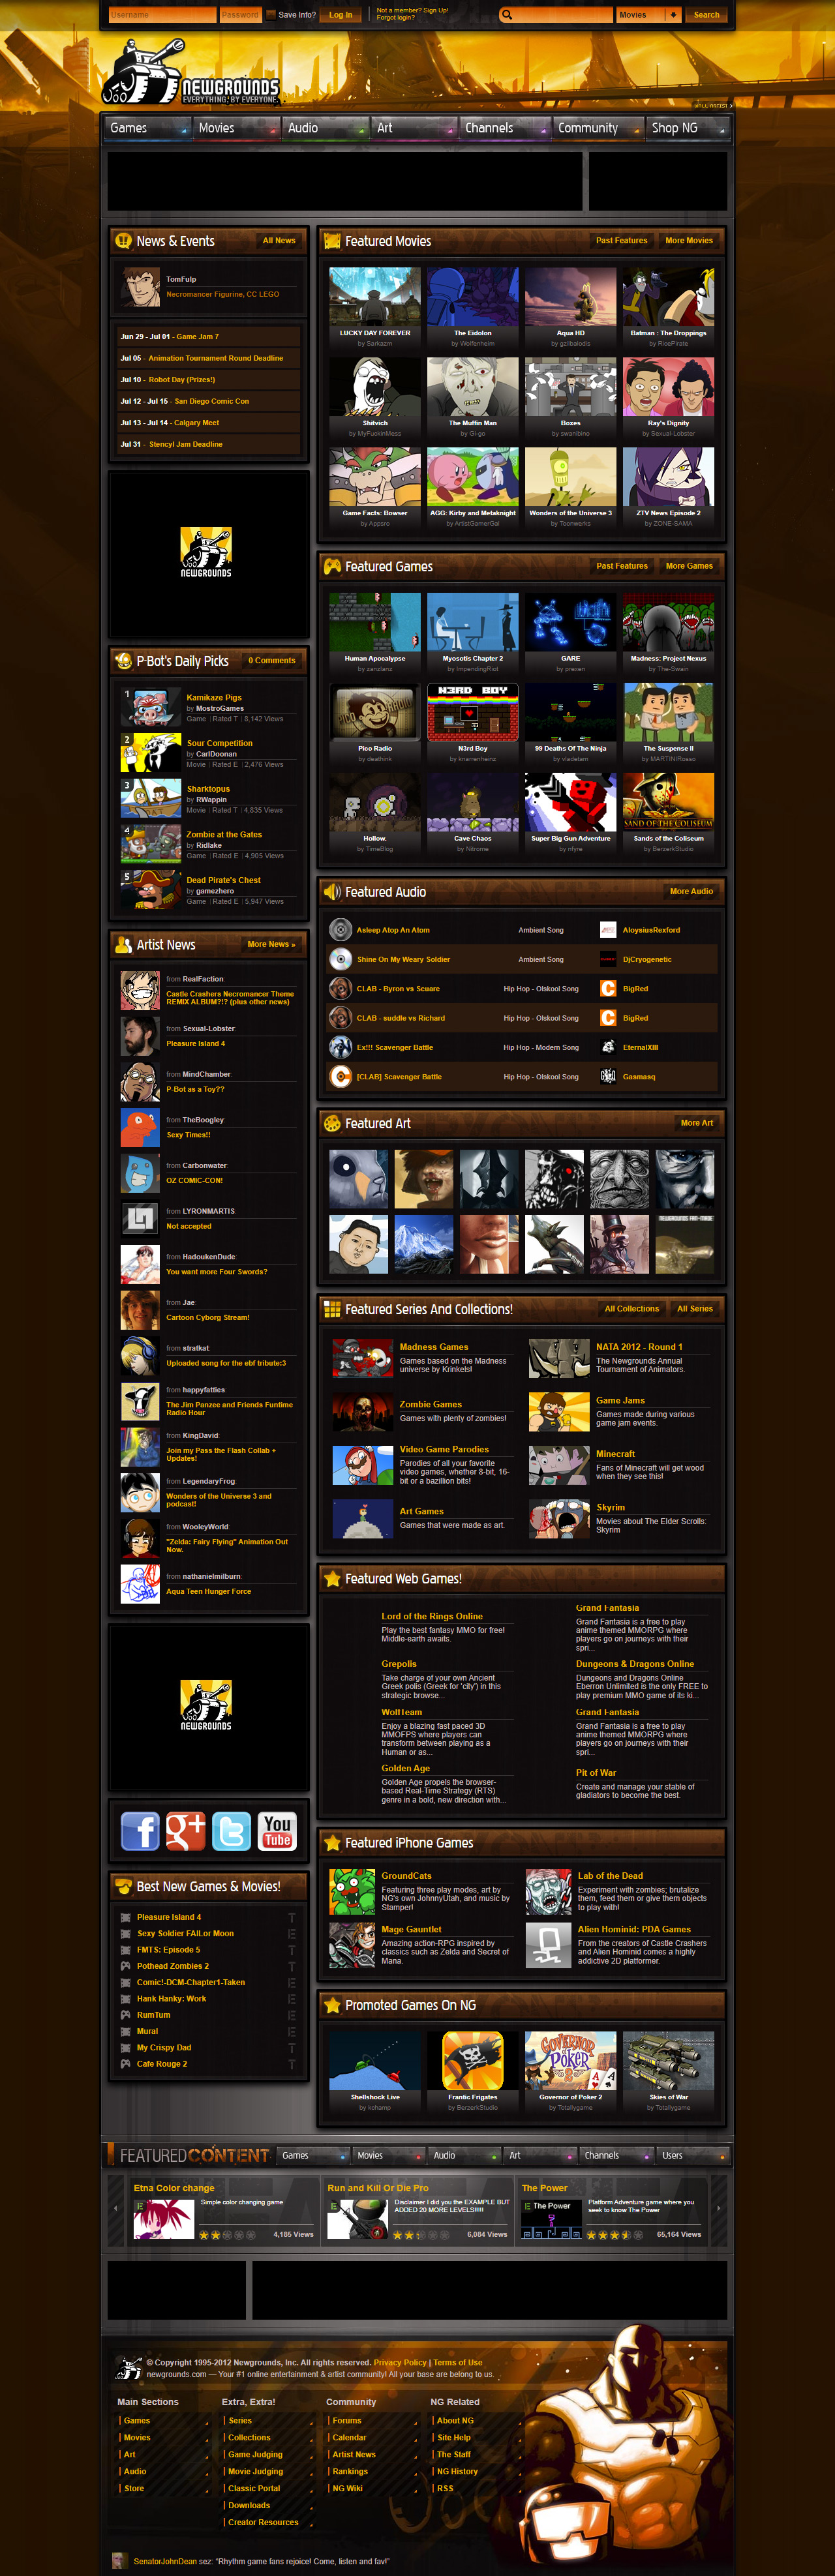 Newgrounds website in 2012